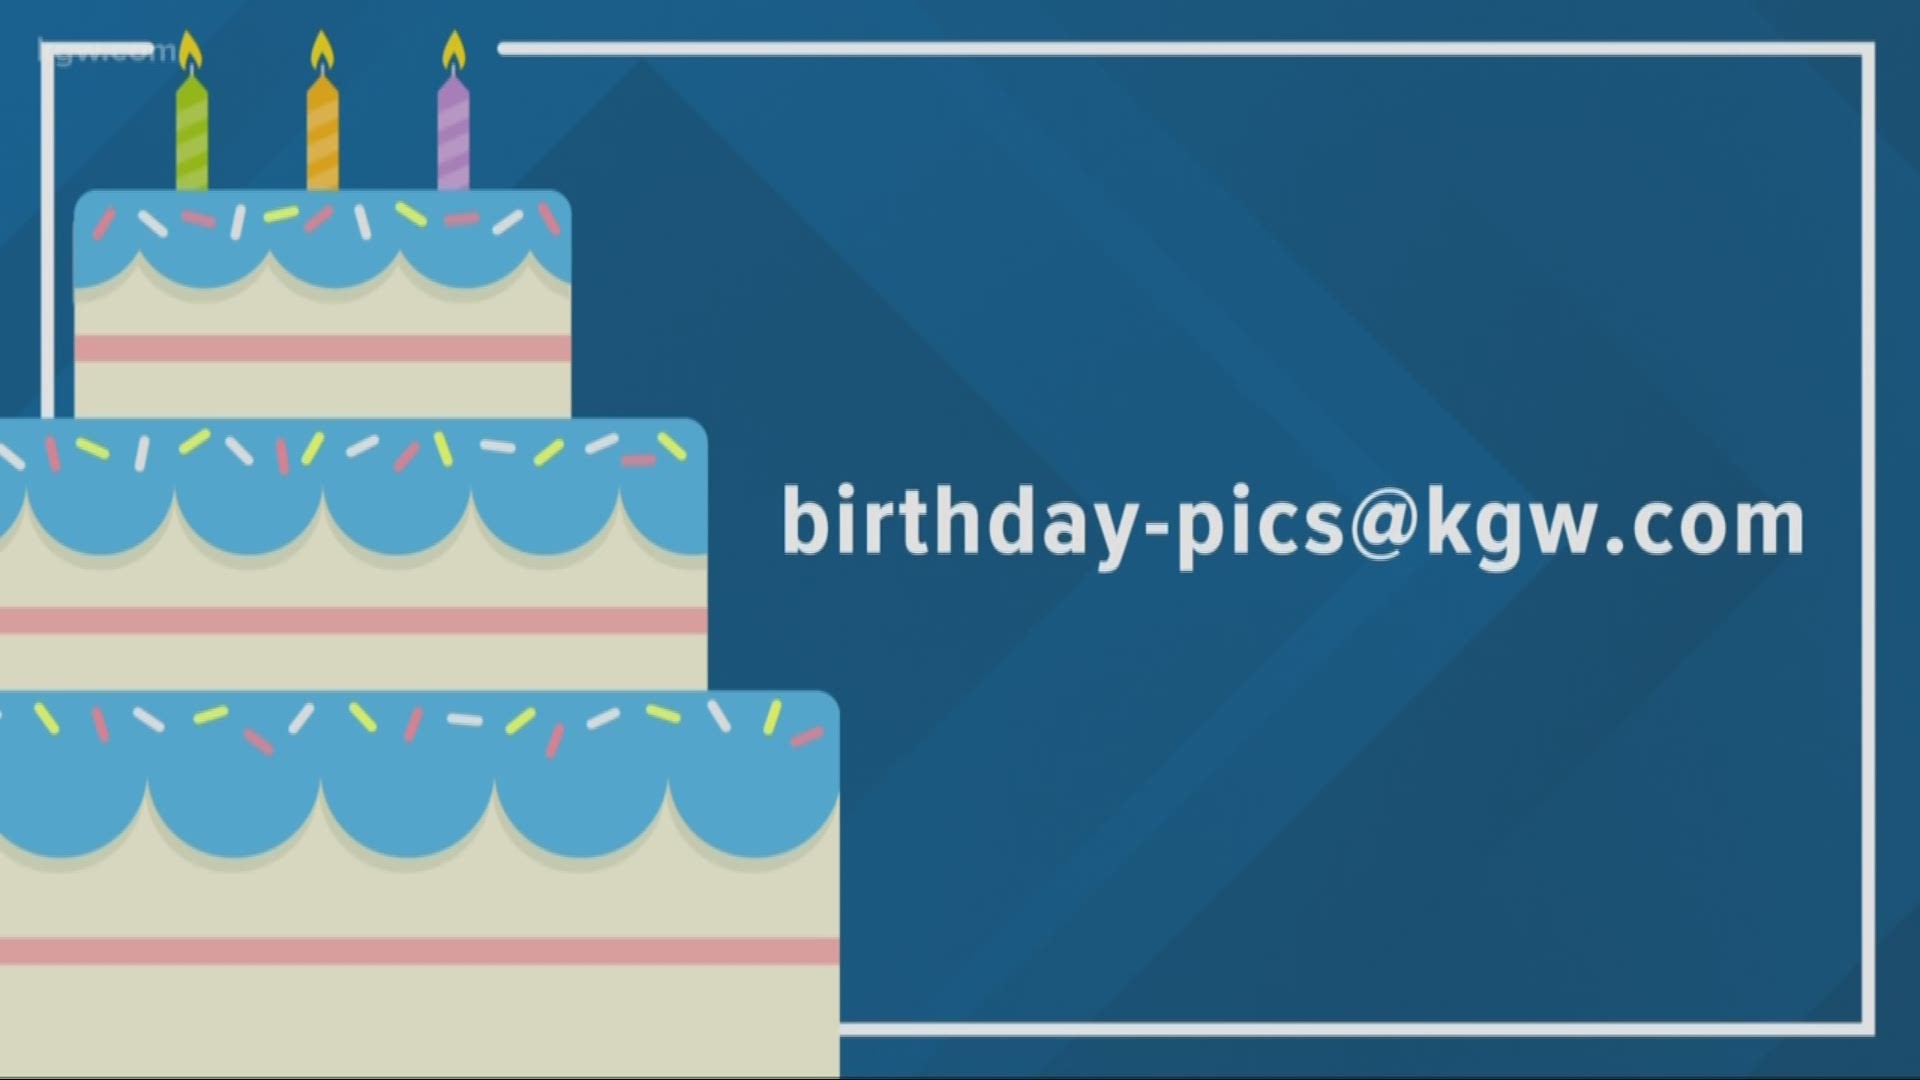 KGW viewer birthdays: 9-18-19